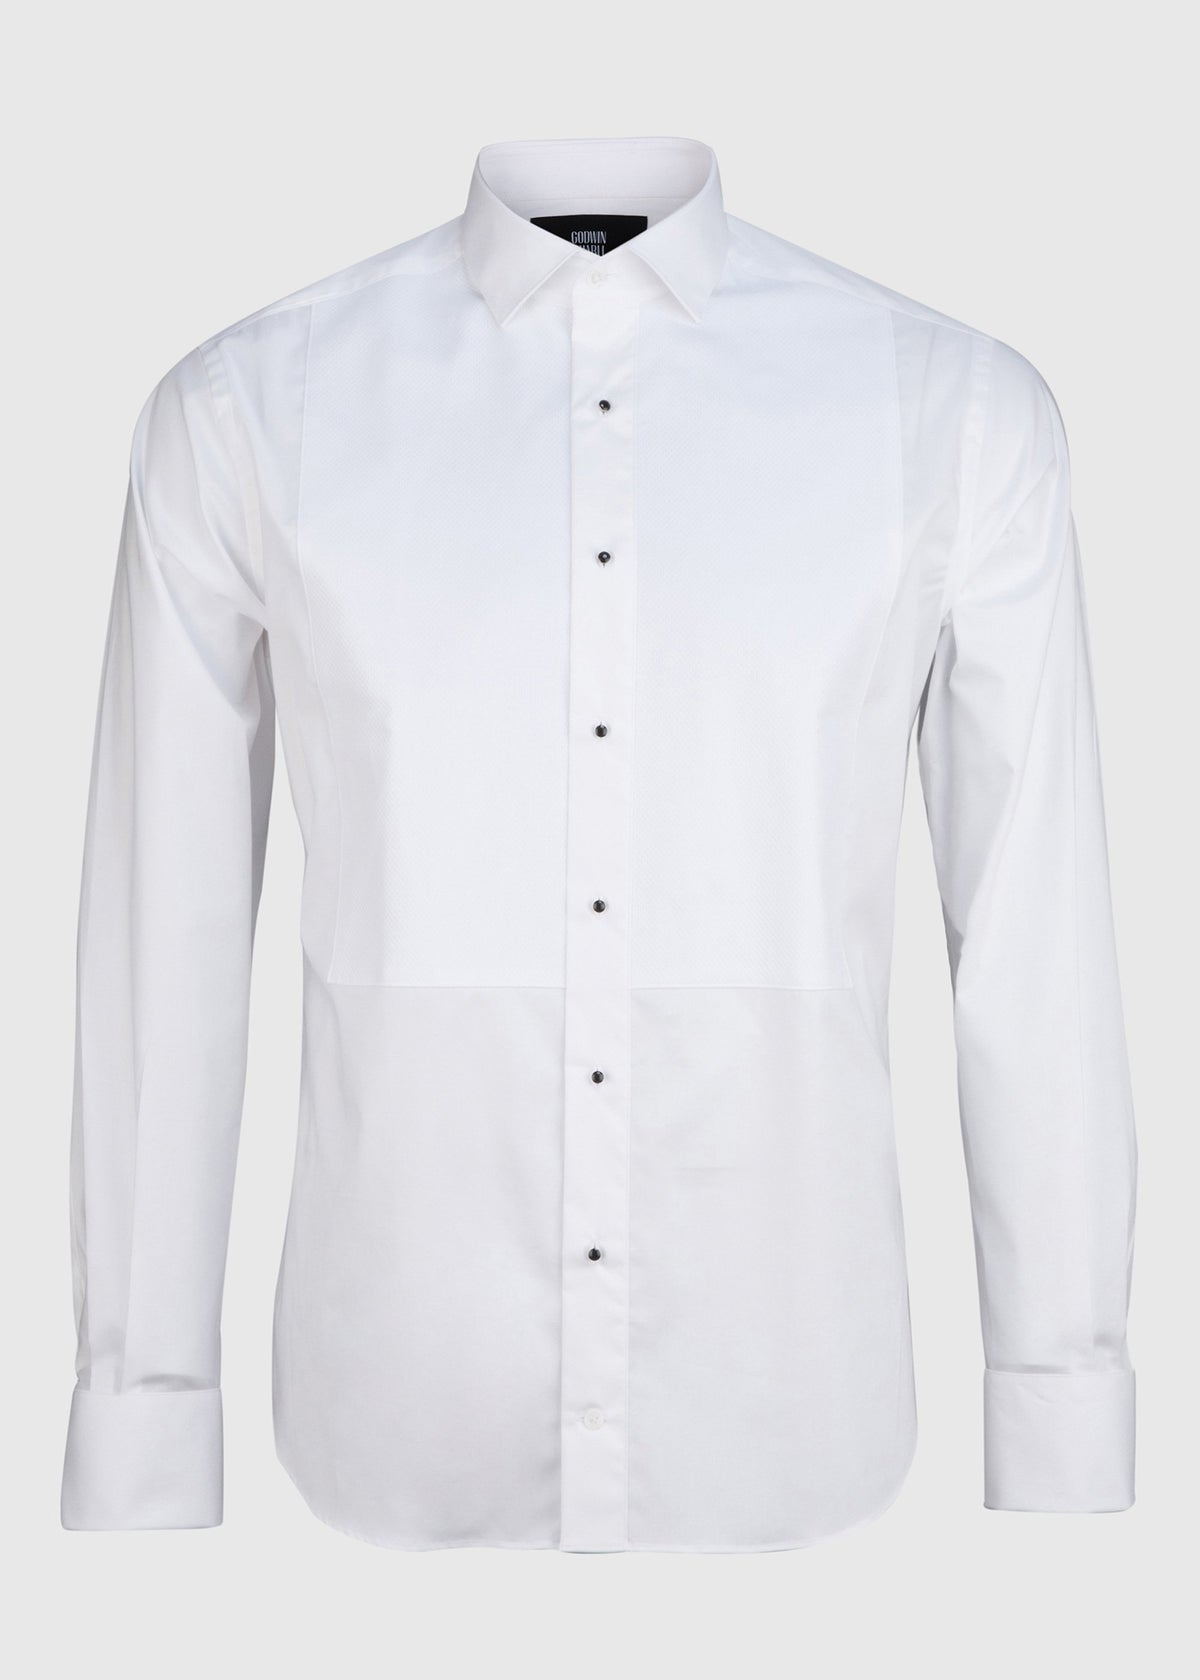 Bastien Dinner Shirt - White Poplin Cotton (Pique Bib Front)